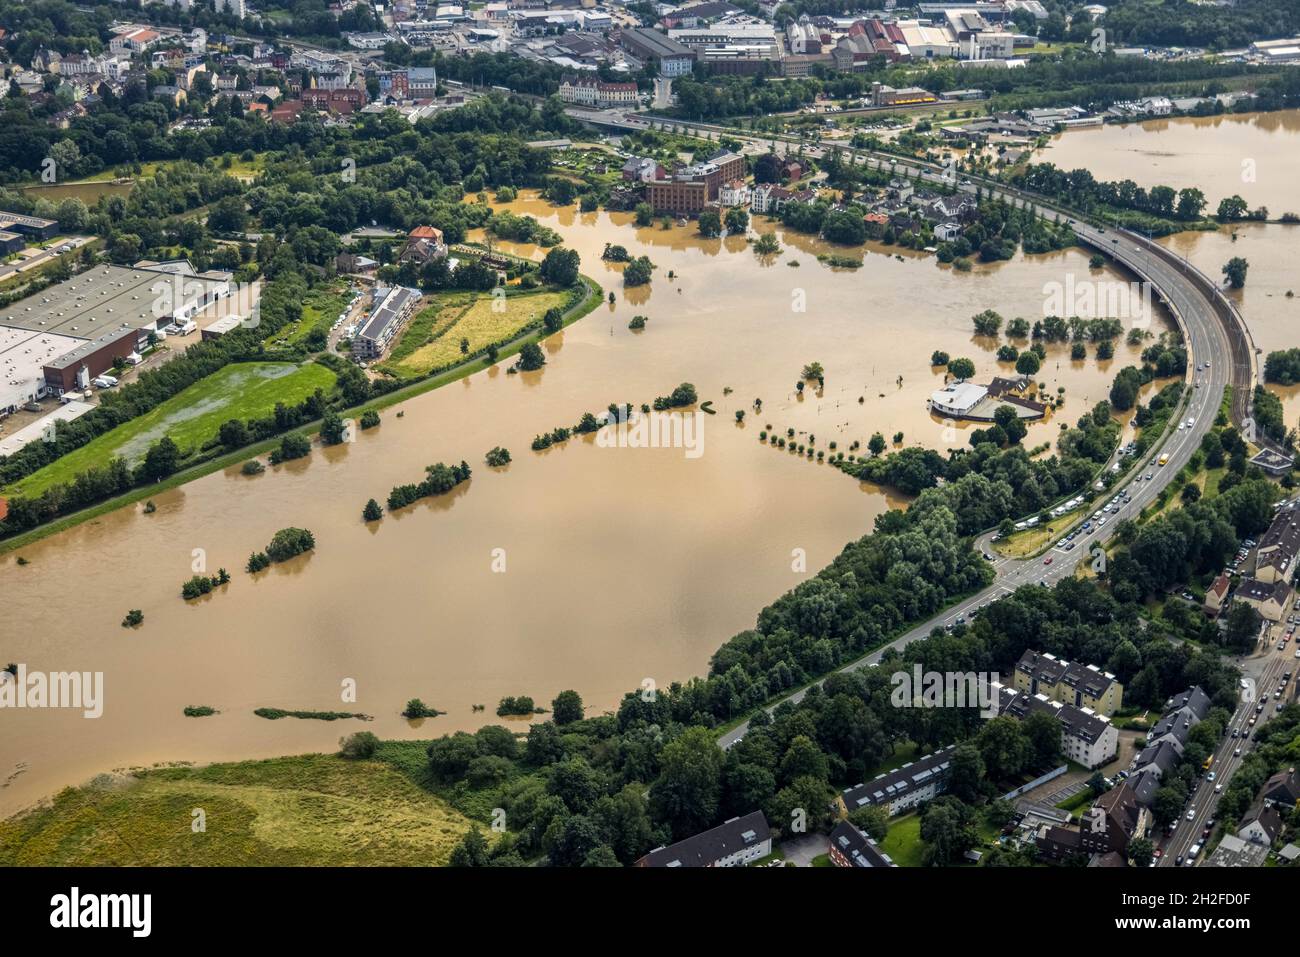 Vue aérienne, inondation de la Ruhr, inondation, Camping Ruhrbrücke à Hattingen, Baak, Hattingen, Ruhrgebiet, Rhénanie-du-Nord-Westphalie,Allemagne, Luftbild, Ruhrhochwas Banque D'Images